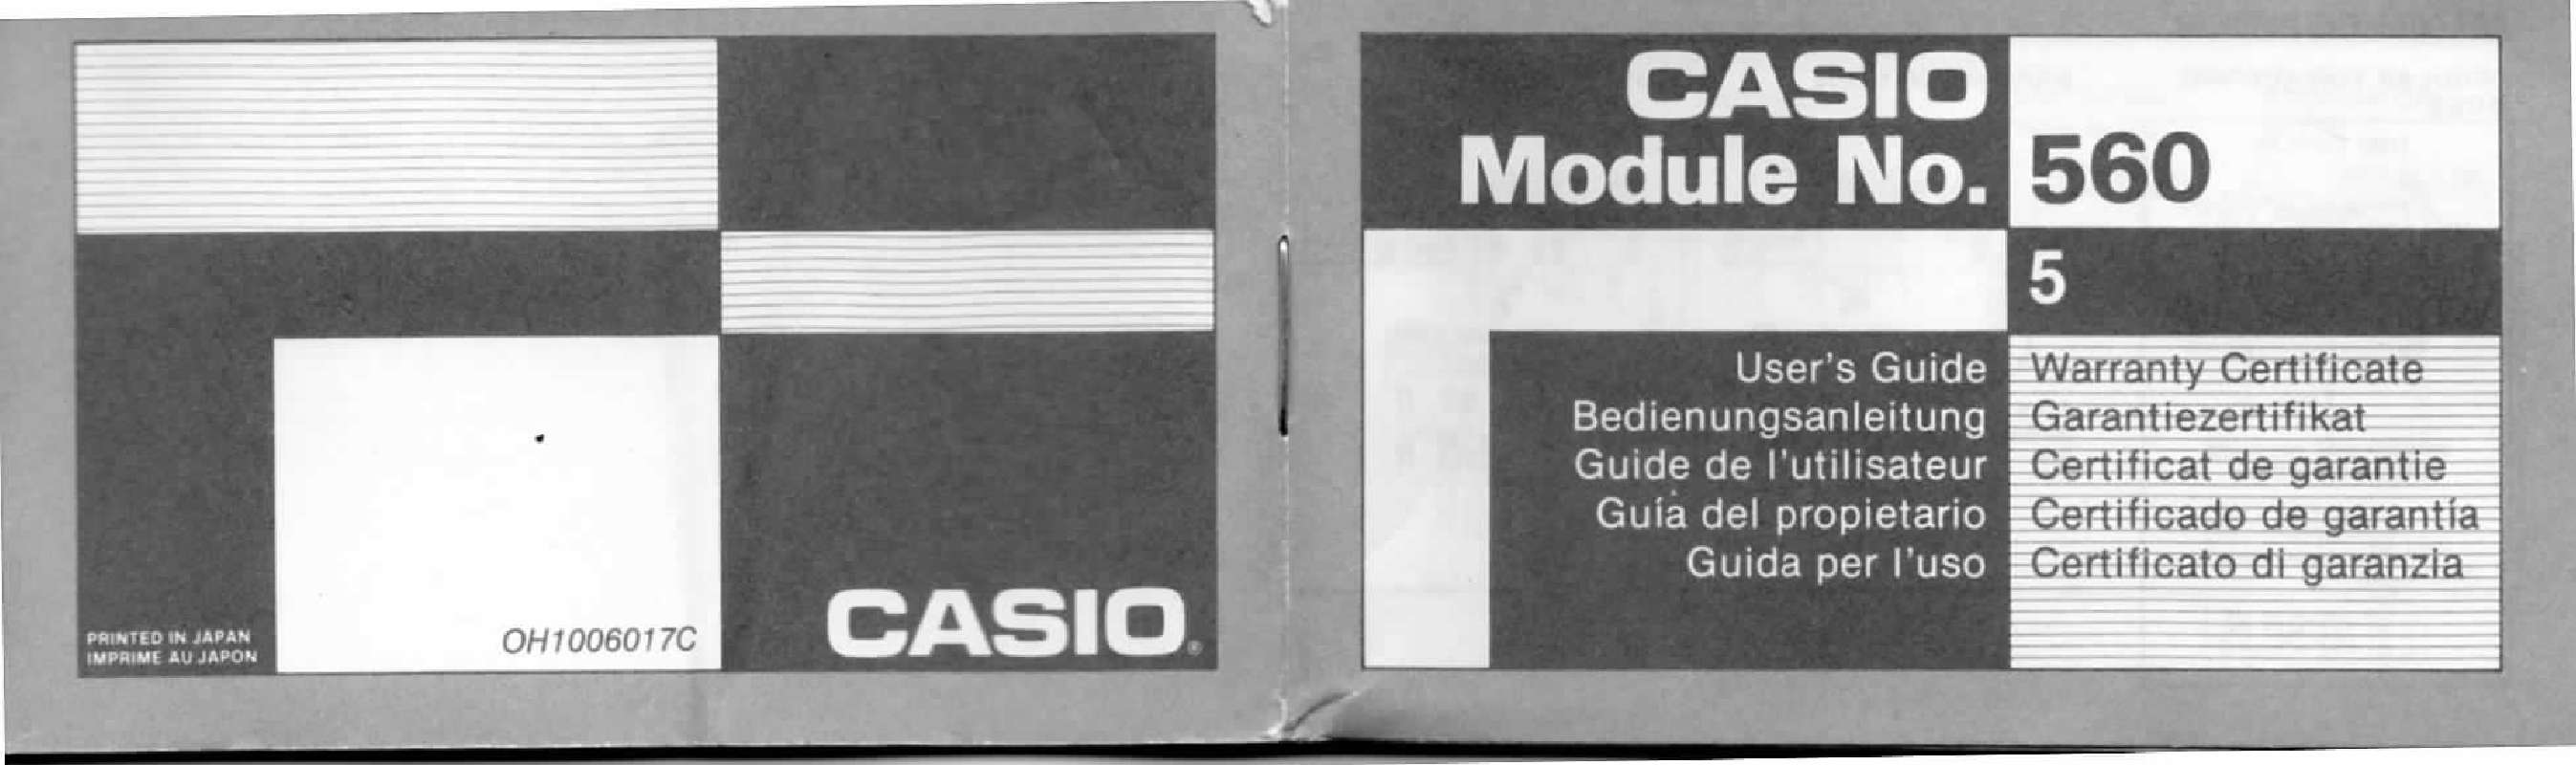 Guide utilisation  CASIO 560  de la marque CASIO